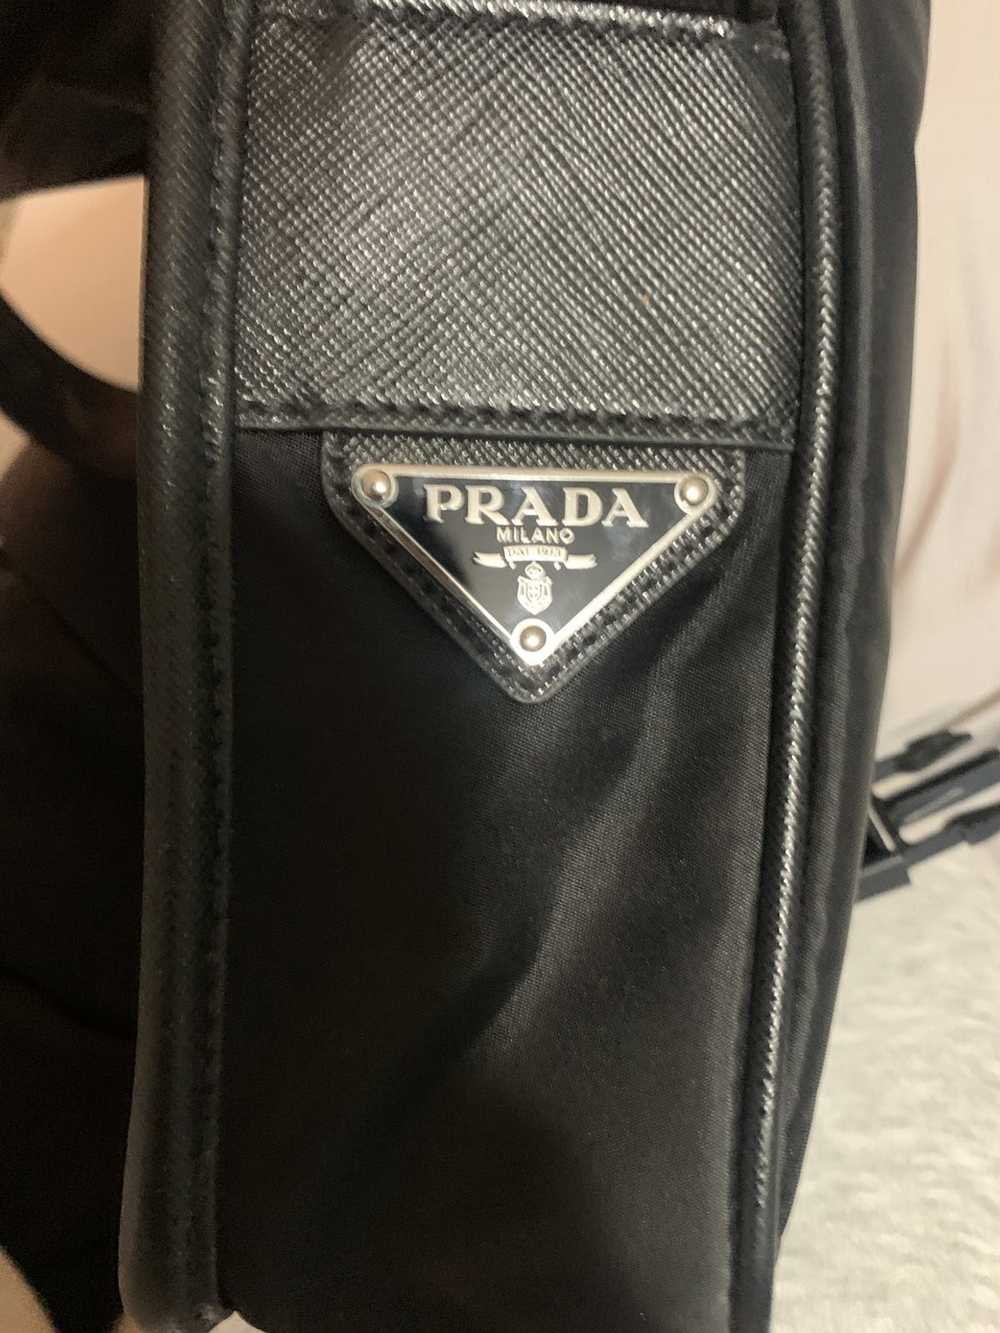 Prada Prada messenger bag - image 10